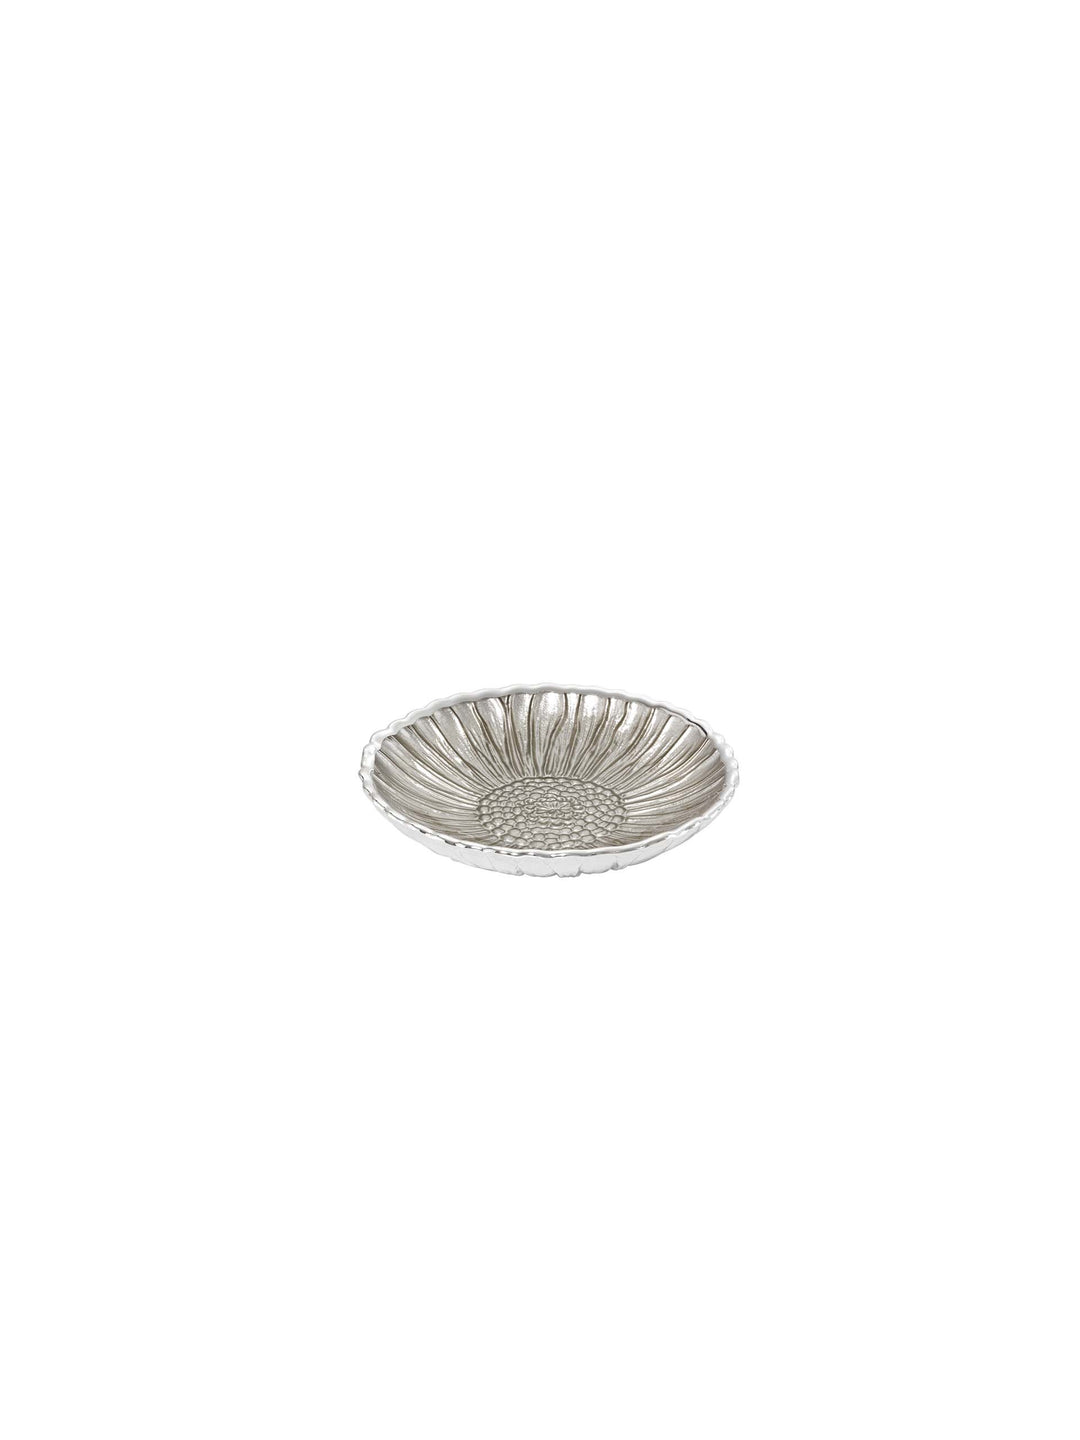 Argenesi Sunflower Flat D. 14 cm srebrny szklany piasek 0,02039